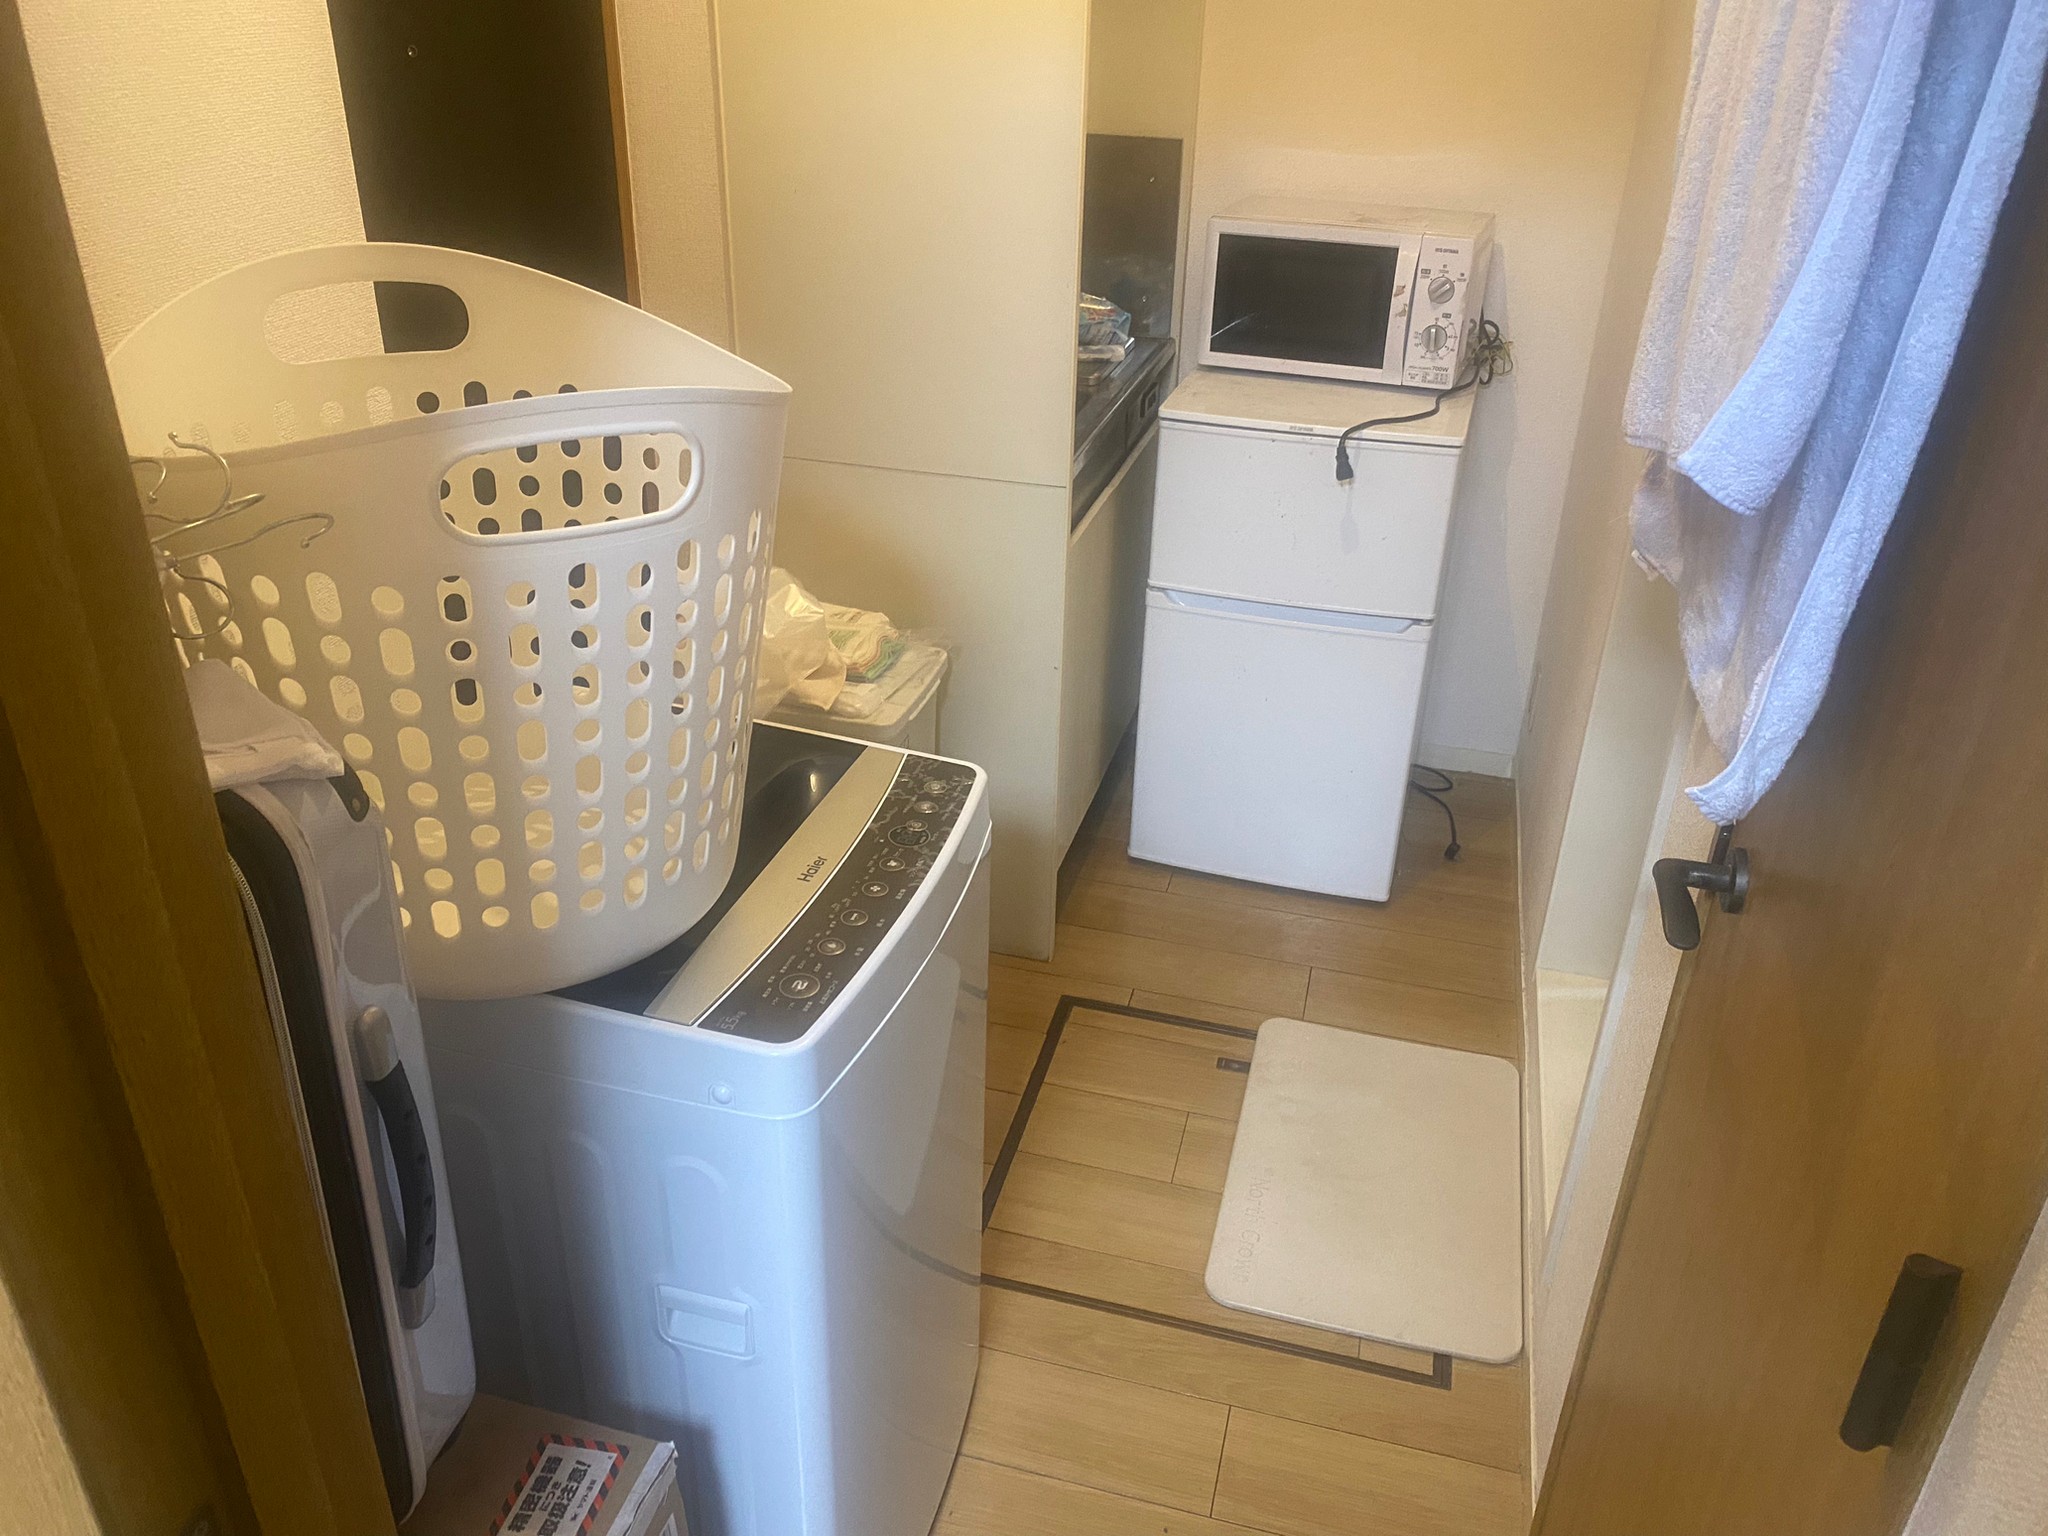 冷蔵庫、洗濯機、洗濯籠、電子レンジ、キャリーケースの回収前の状態